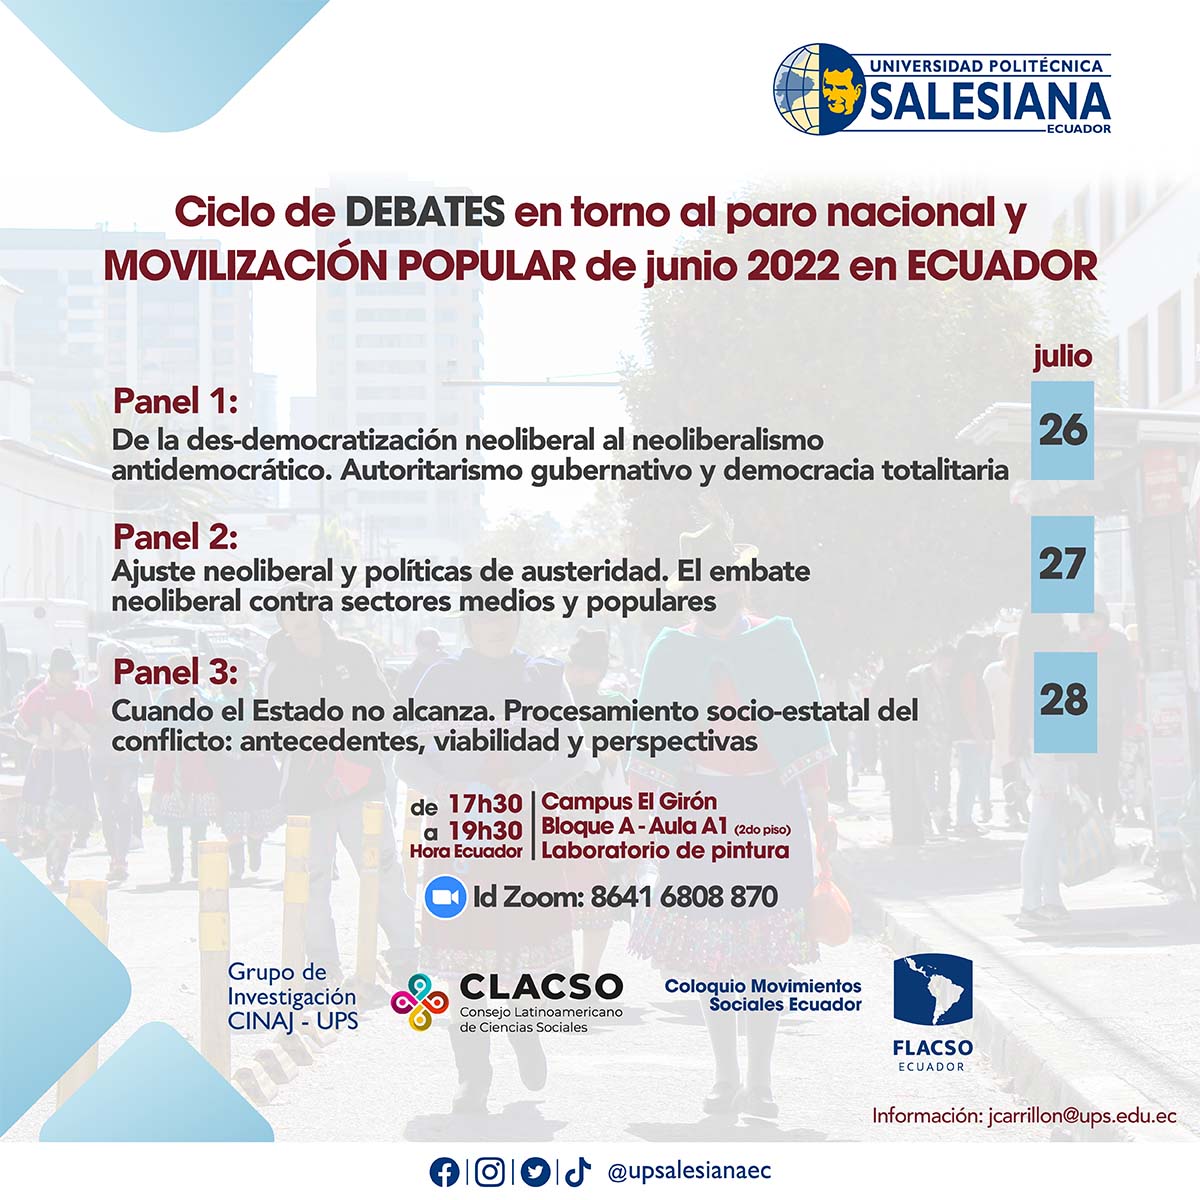 Afiche promocional del Ciclo de debates en torno al paro nacional y movilización popular de junio 2022